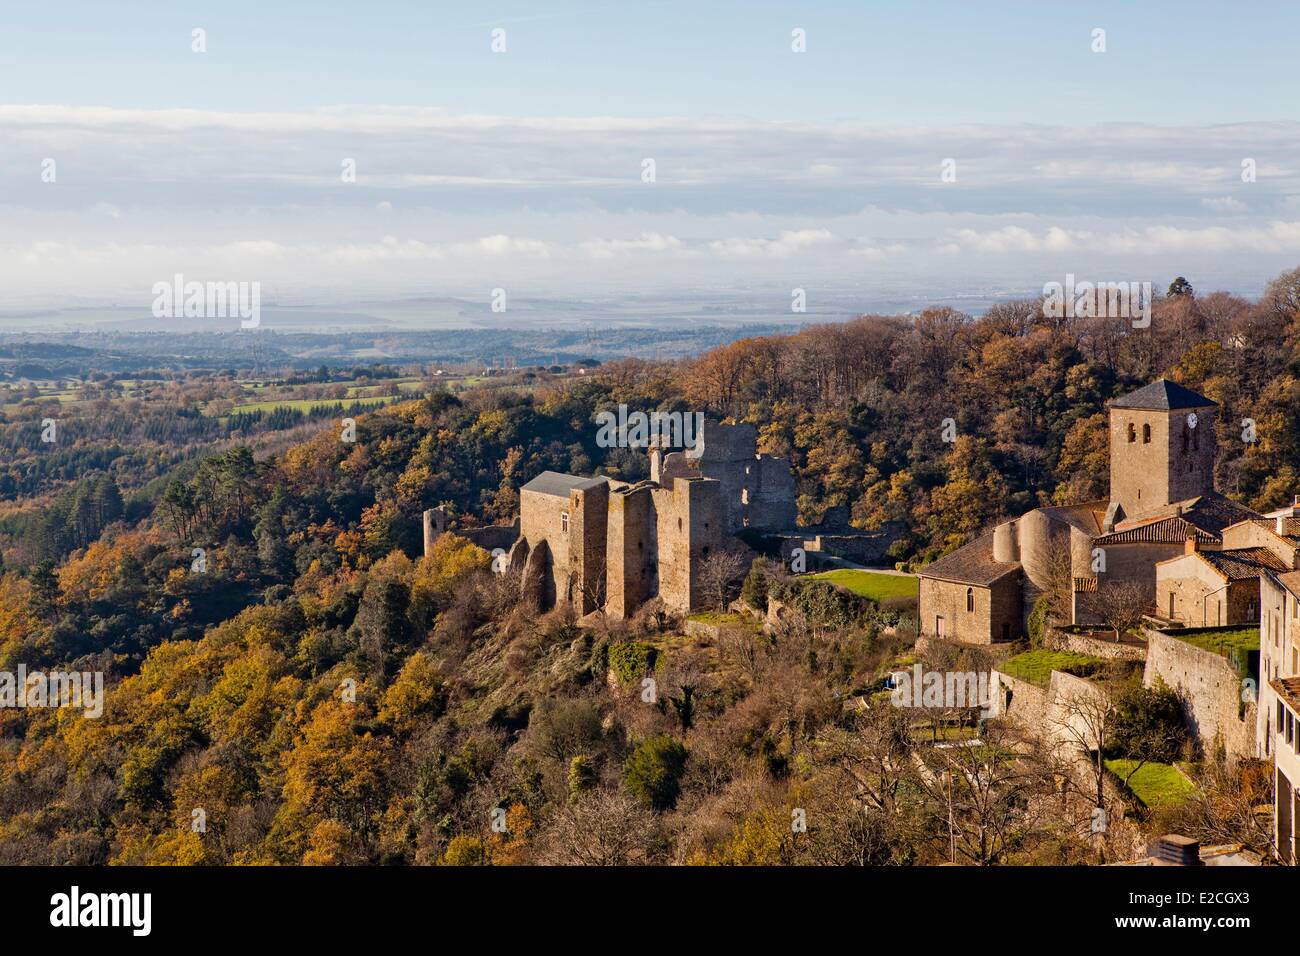 La France, l'Aude, la Montagne Noire (Black Mountain), Saissac, château cathare de Saissac Banque D'Images